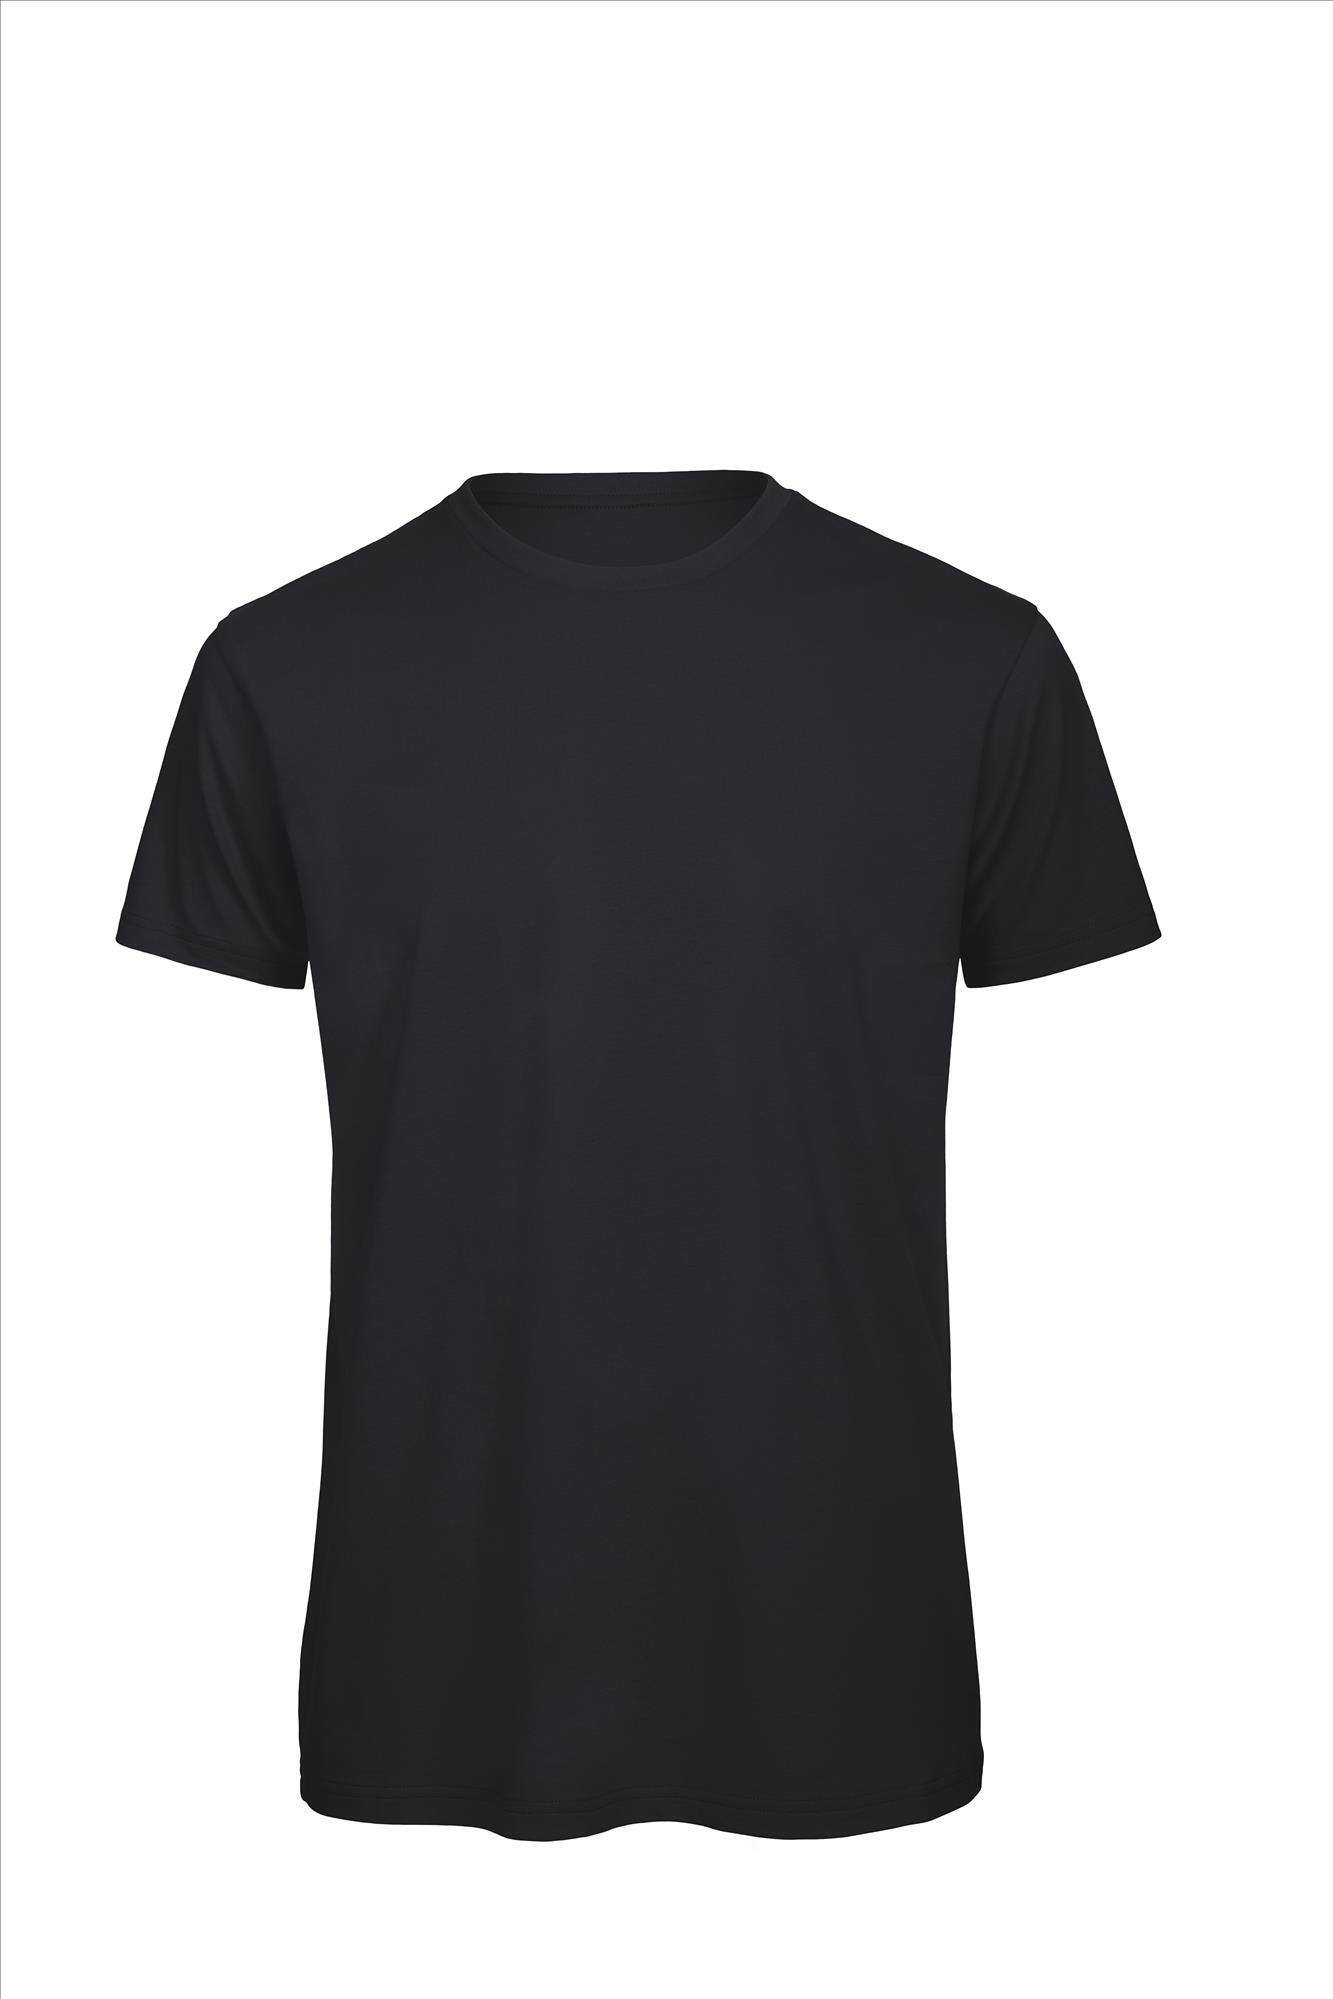 Heren T-shirt donkerblauw te personaliseren bedrukbaar duurzaam shirt